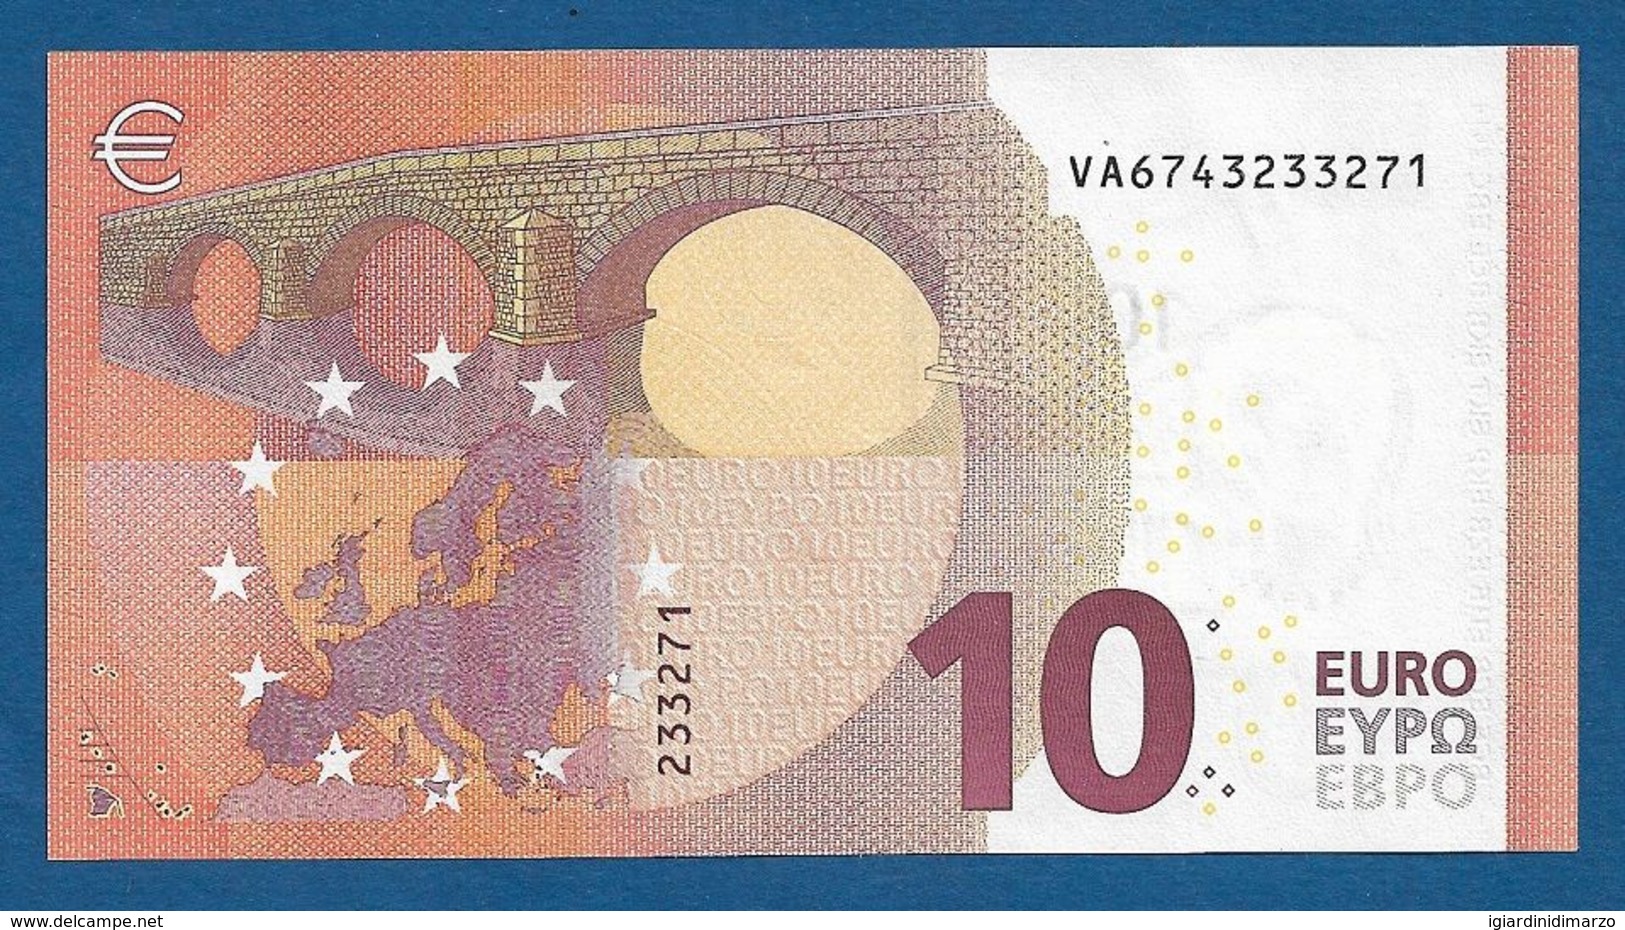 SPAGNA - 2014 - BANCONOTA DA 10 EURO DRAGHI SERIE VA (V006H1) - NON CIRCOLATA (FDS-UNC) - IN OTTIME CONDIZIONI. - 10 Euro